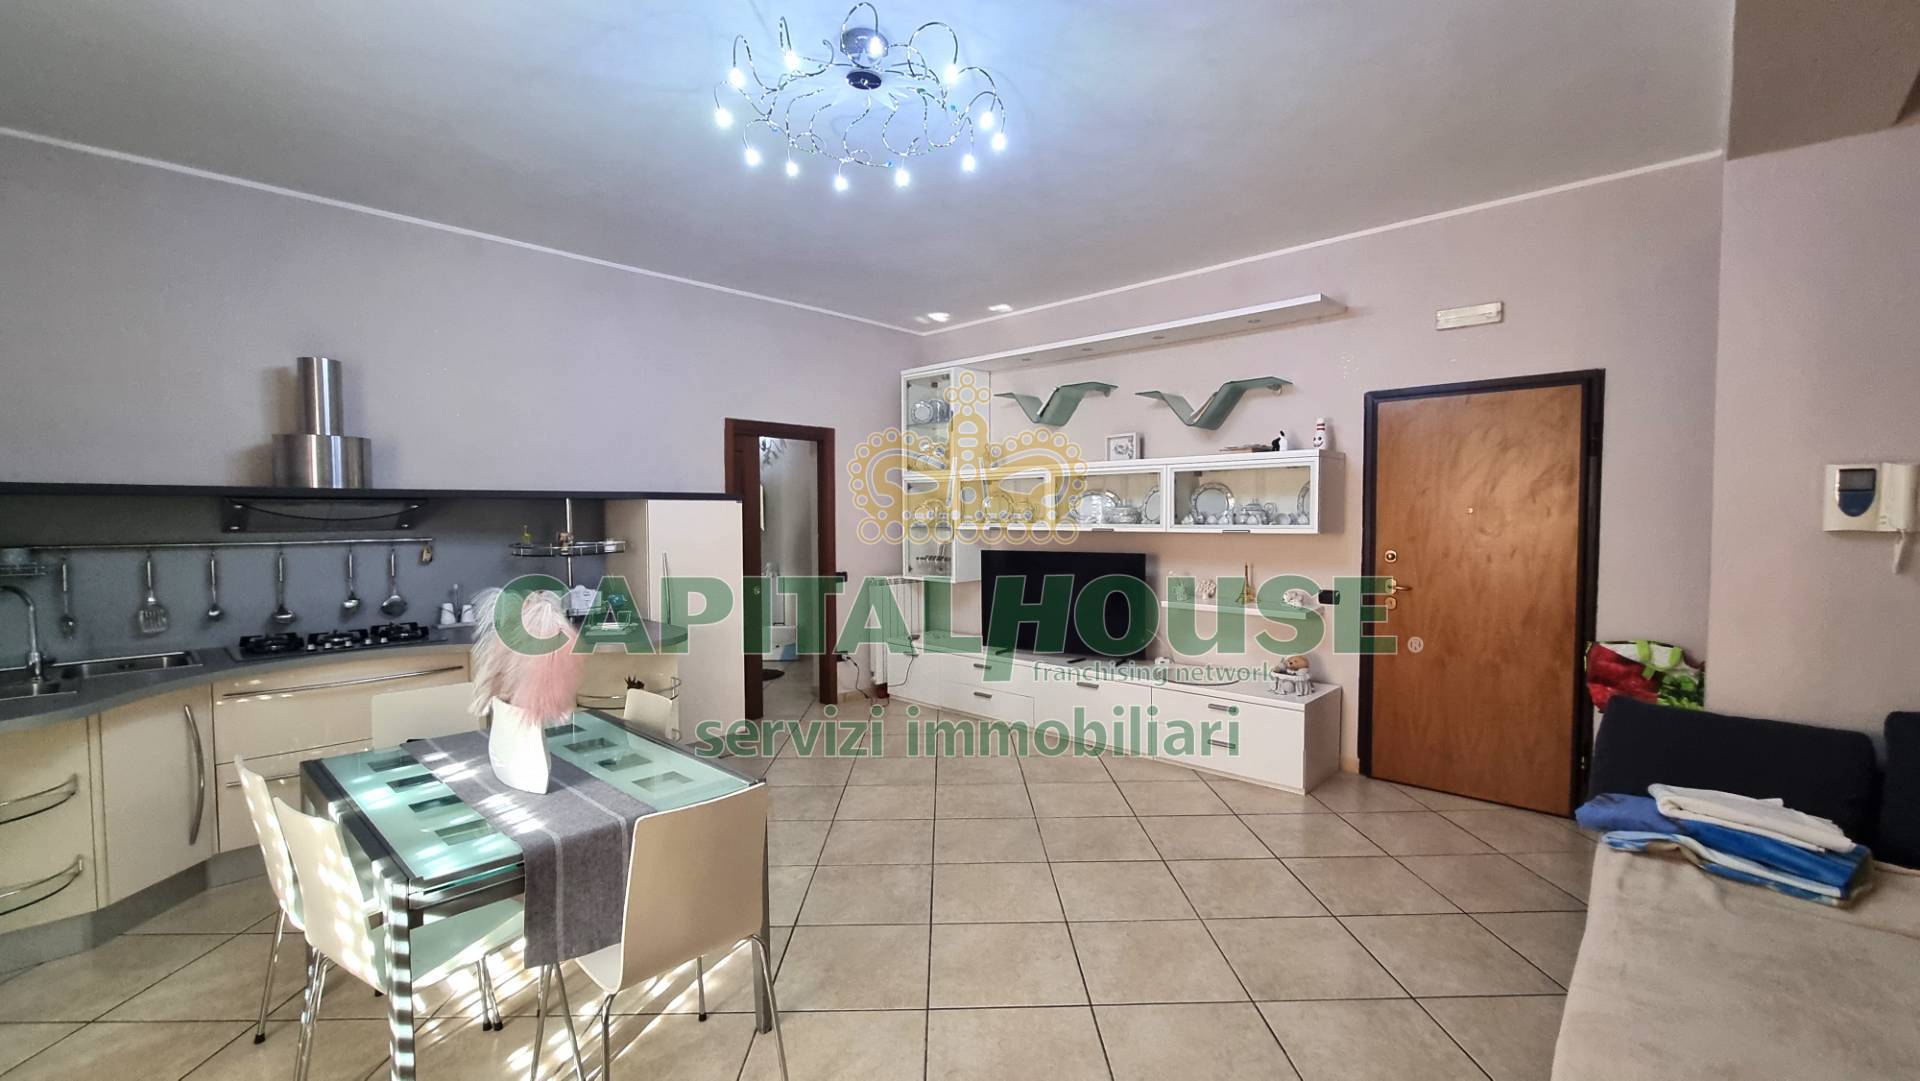 Appartamento in vendita a Portico di Caserta, 3 locali, prezzo € 118.000 | PortaleAgenzieImmobiliari.it